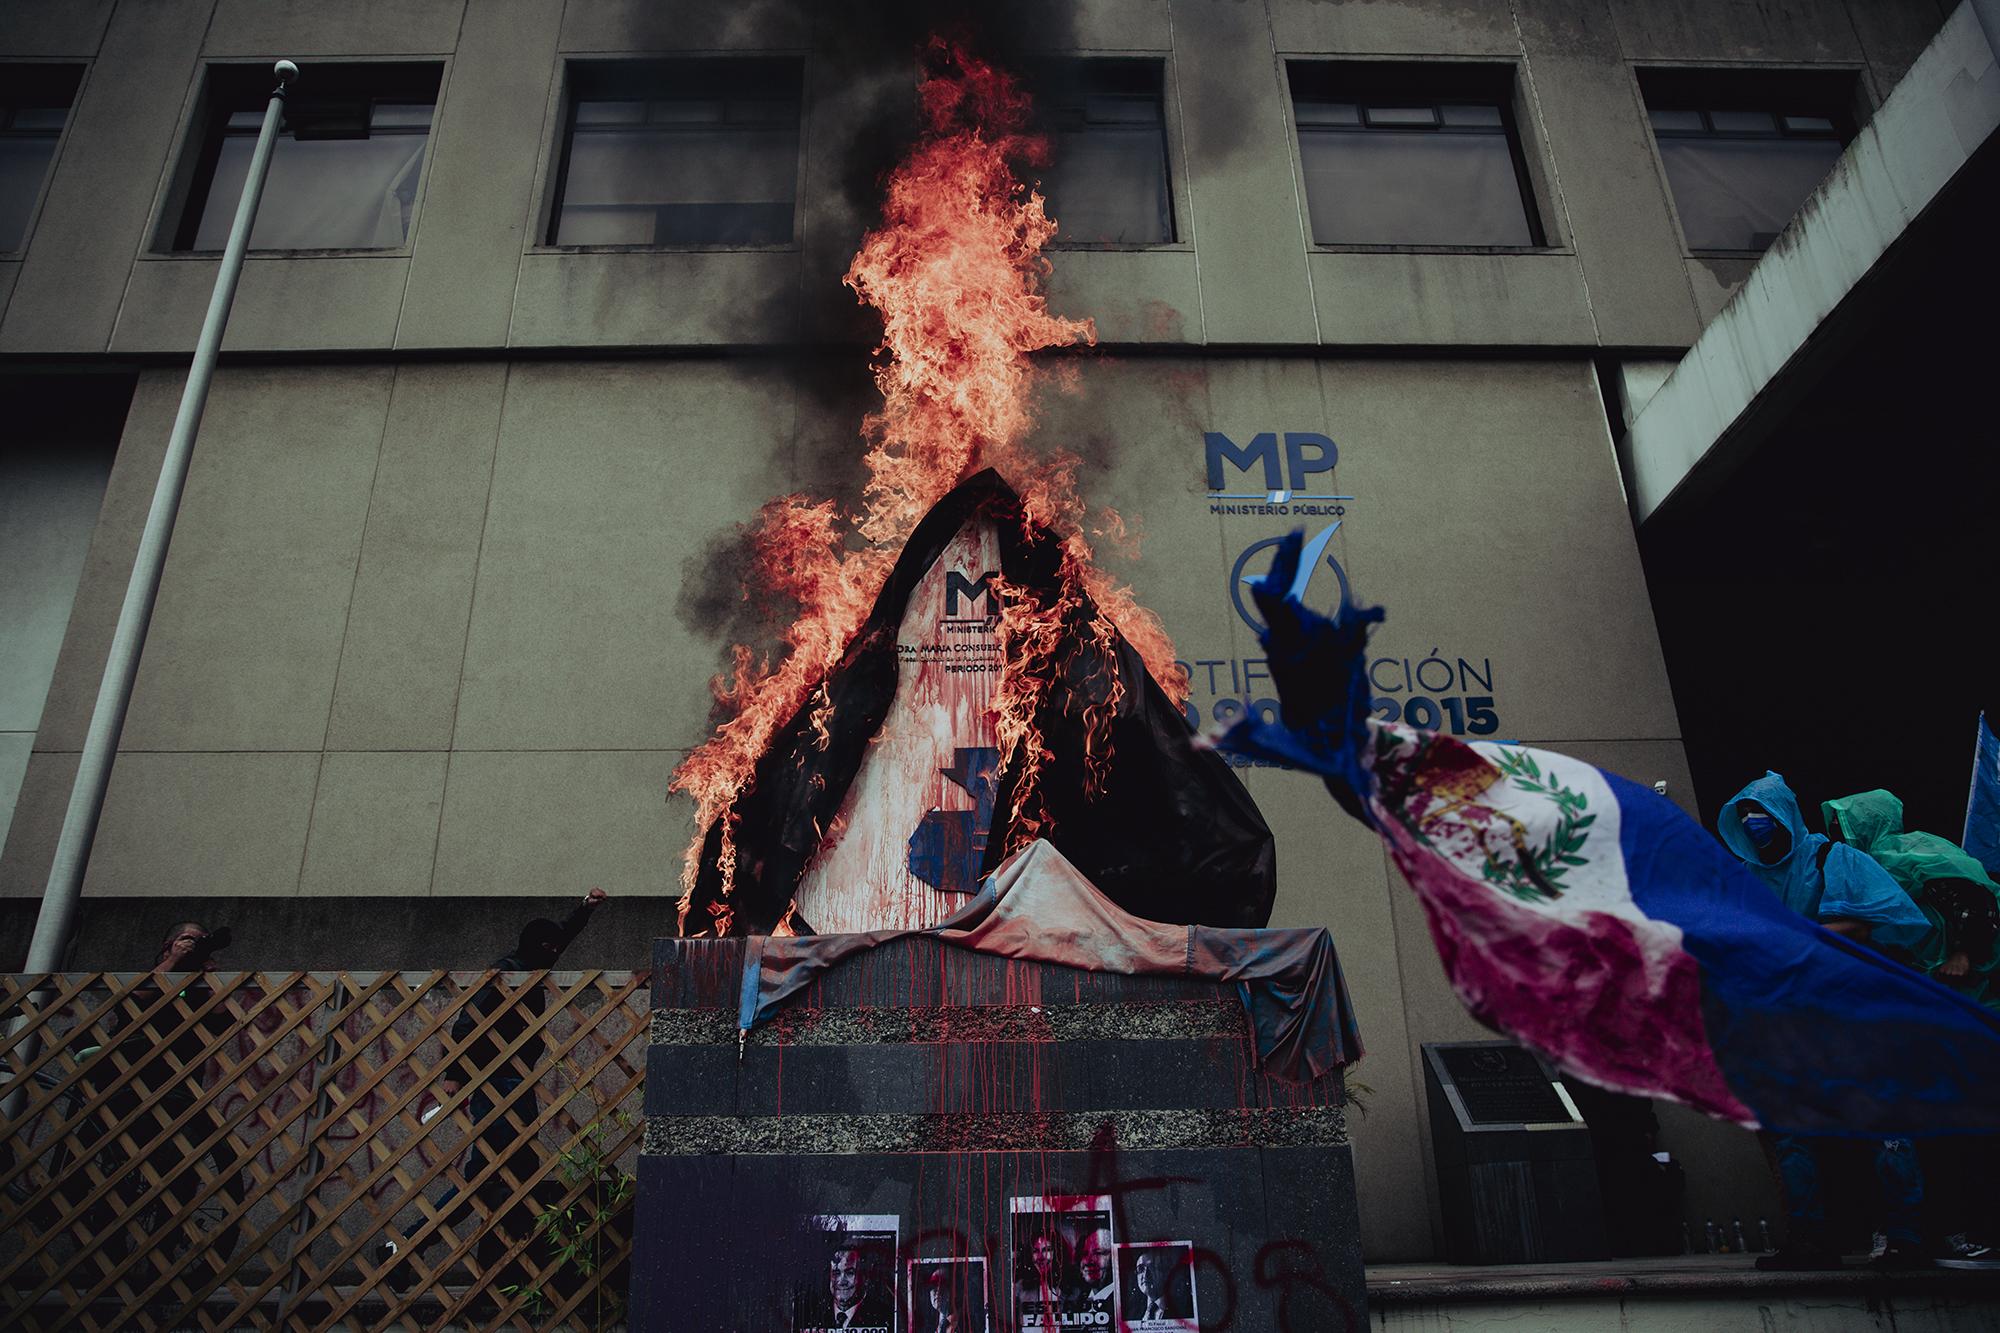 Durante la manifestación un grupo de personas le puso gasolina a un monumento con el símbolo de Ministerio Público en la Ciudad de Guatemala, allí se concentraron todas las marchas que entraron de distintos puntos a la capital. Foto de El Faro: Carlos Barrera